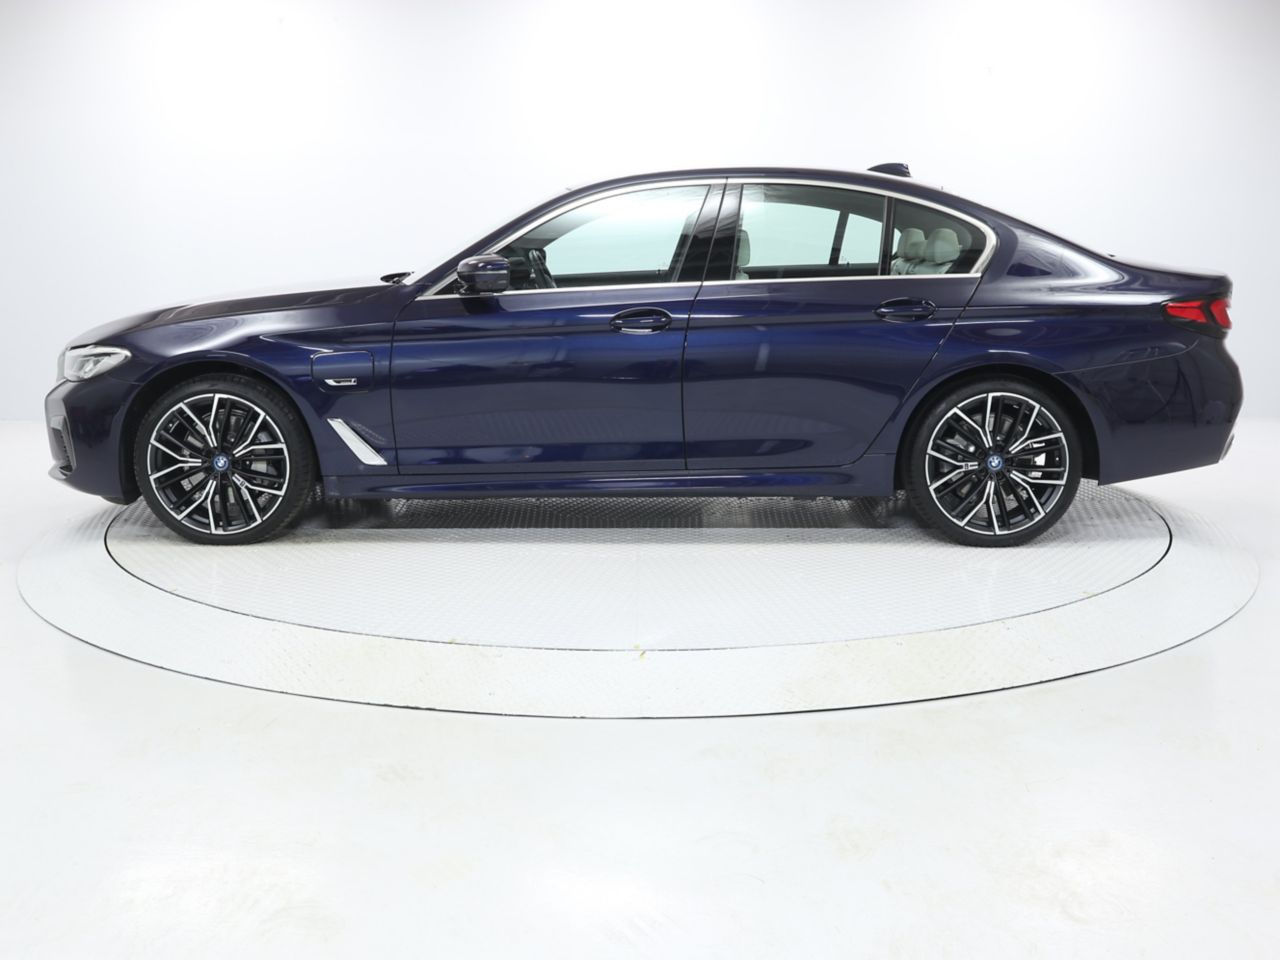 530e | 530 | 5シリーズ | BMW | 車両 | IUCP JP BMW Website